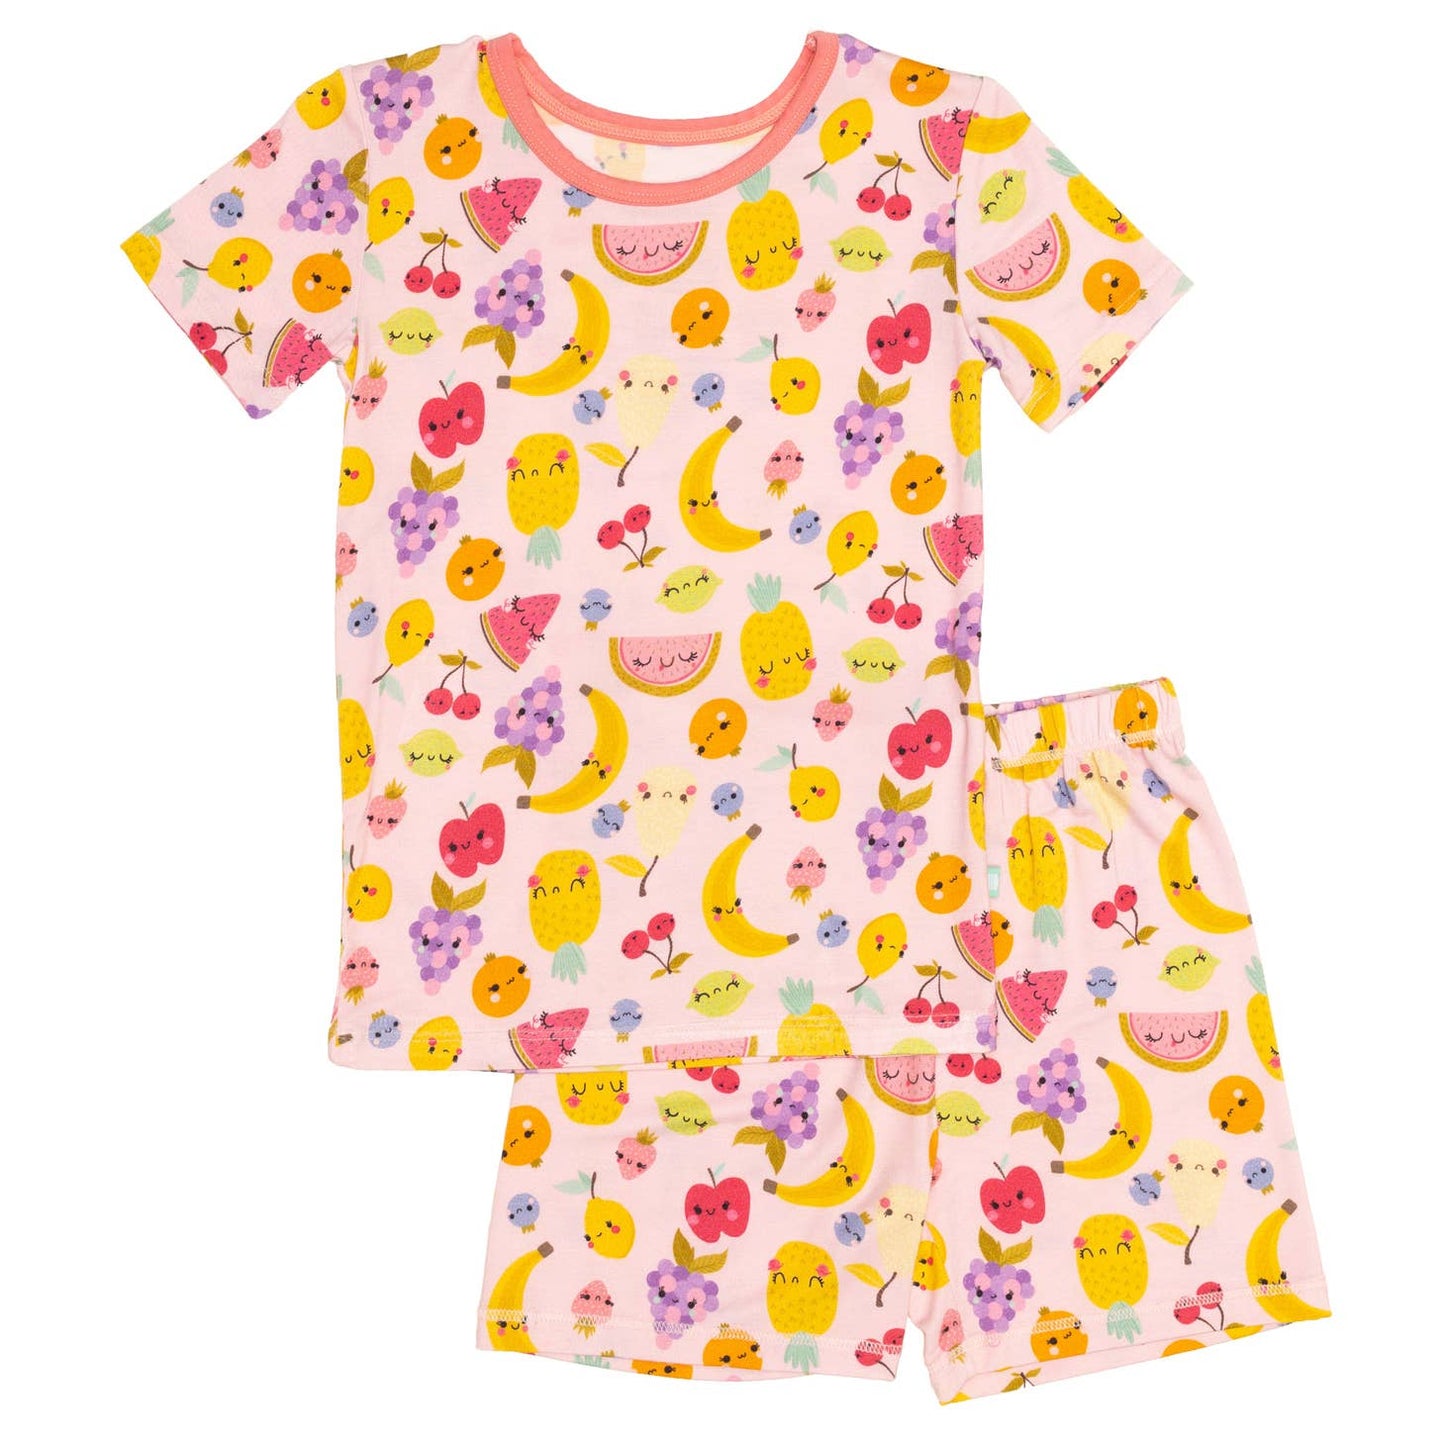 Macaron + Me girls fruit salad short pajamas